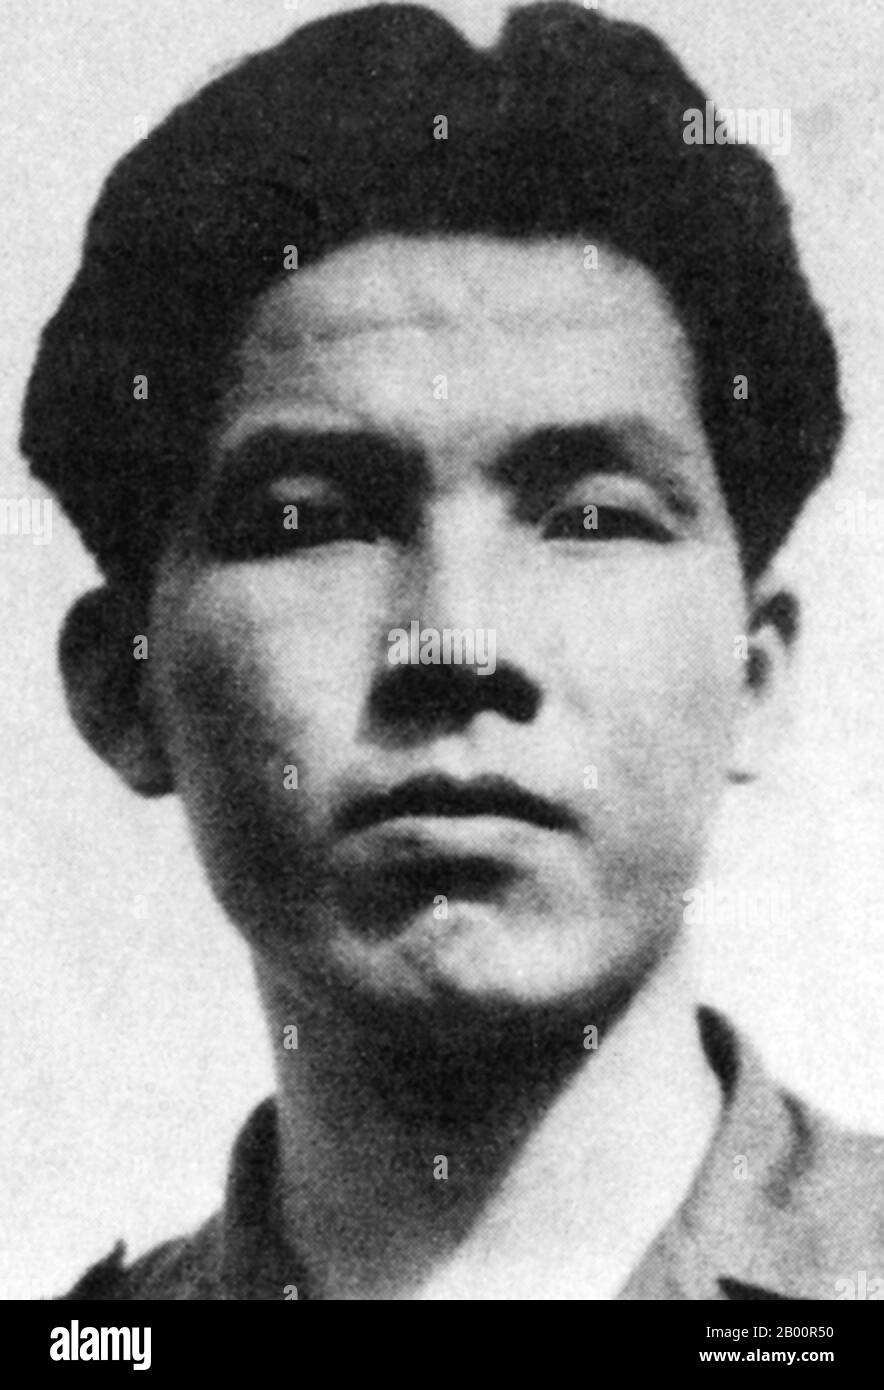 Kambodscha: Ney Sarann (1928–1976) war ein kambodschanischer kommunistischer Politiker und eine führende Persönlichkeit innerhalb der Vereinigten Issarak Front und der kambodschanischen Kommunistischen Partei. Während des Bürgerkriegs trat er als führender Kader der Khmer Rouge in der Nordzone auf. Ende 1976 hatte Pol Pot jedoch entschieden, dass Ney Sarann wegen seiner Verbindung mit den Vietnamesen und anderen ‘reVisionisten’ ein Verräter war. Dies führte zu seiner Verhaftung im September und zur Inhaftierung in Tuol Sleng, wo er gefoltert und hingerichtet wurde. Stockfoto